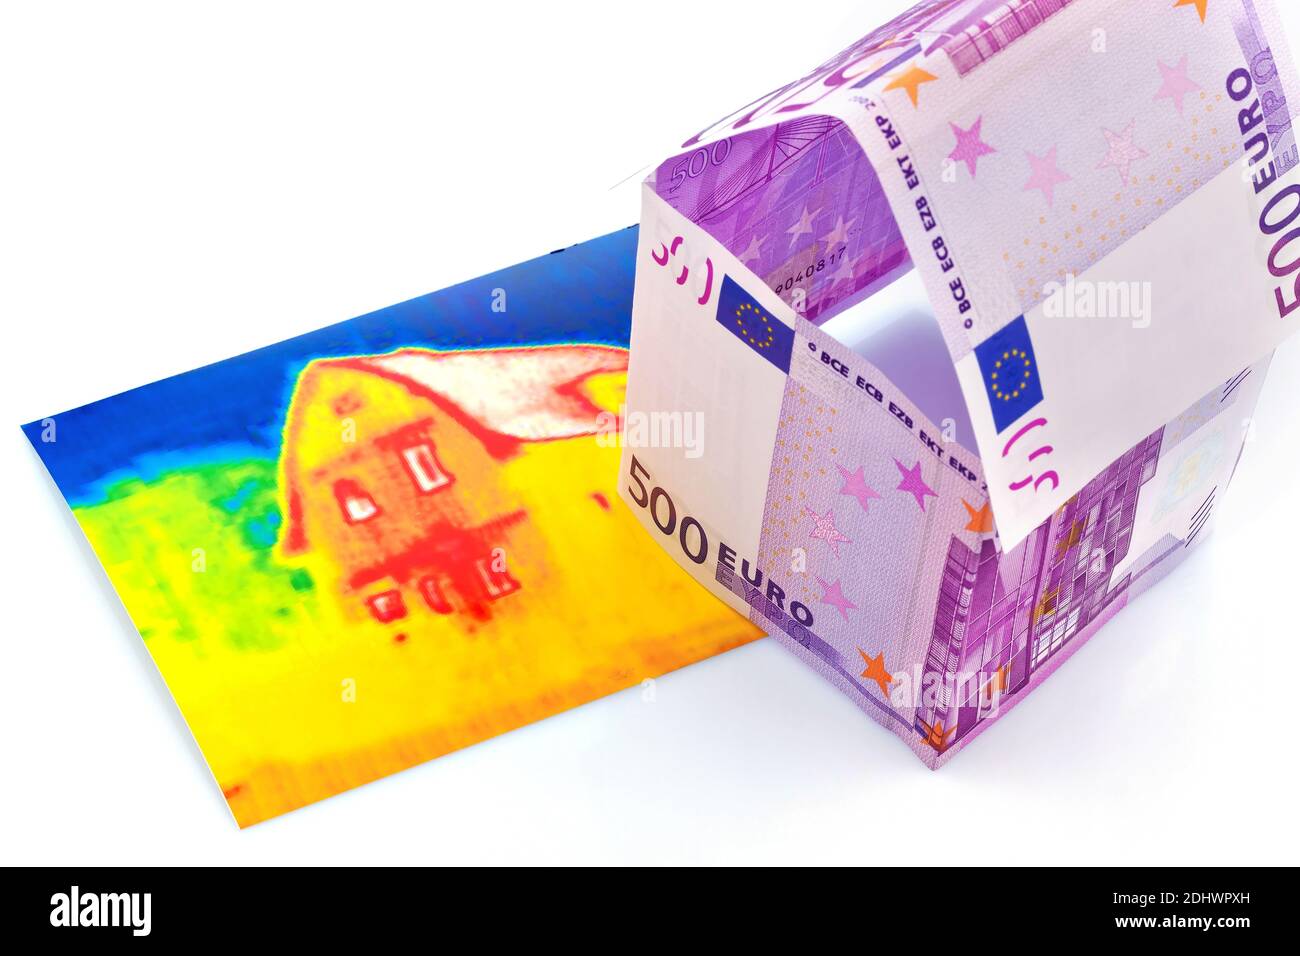 Ein Haus gebaut aus Eurogeld scheinen und einem Infrarotbild. Bausparen, Hausbau und Hauskauf, Wärmebild, Stock Photo